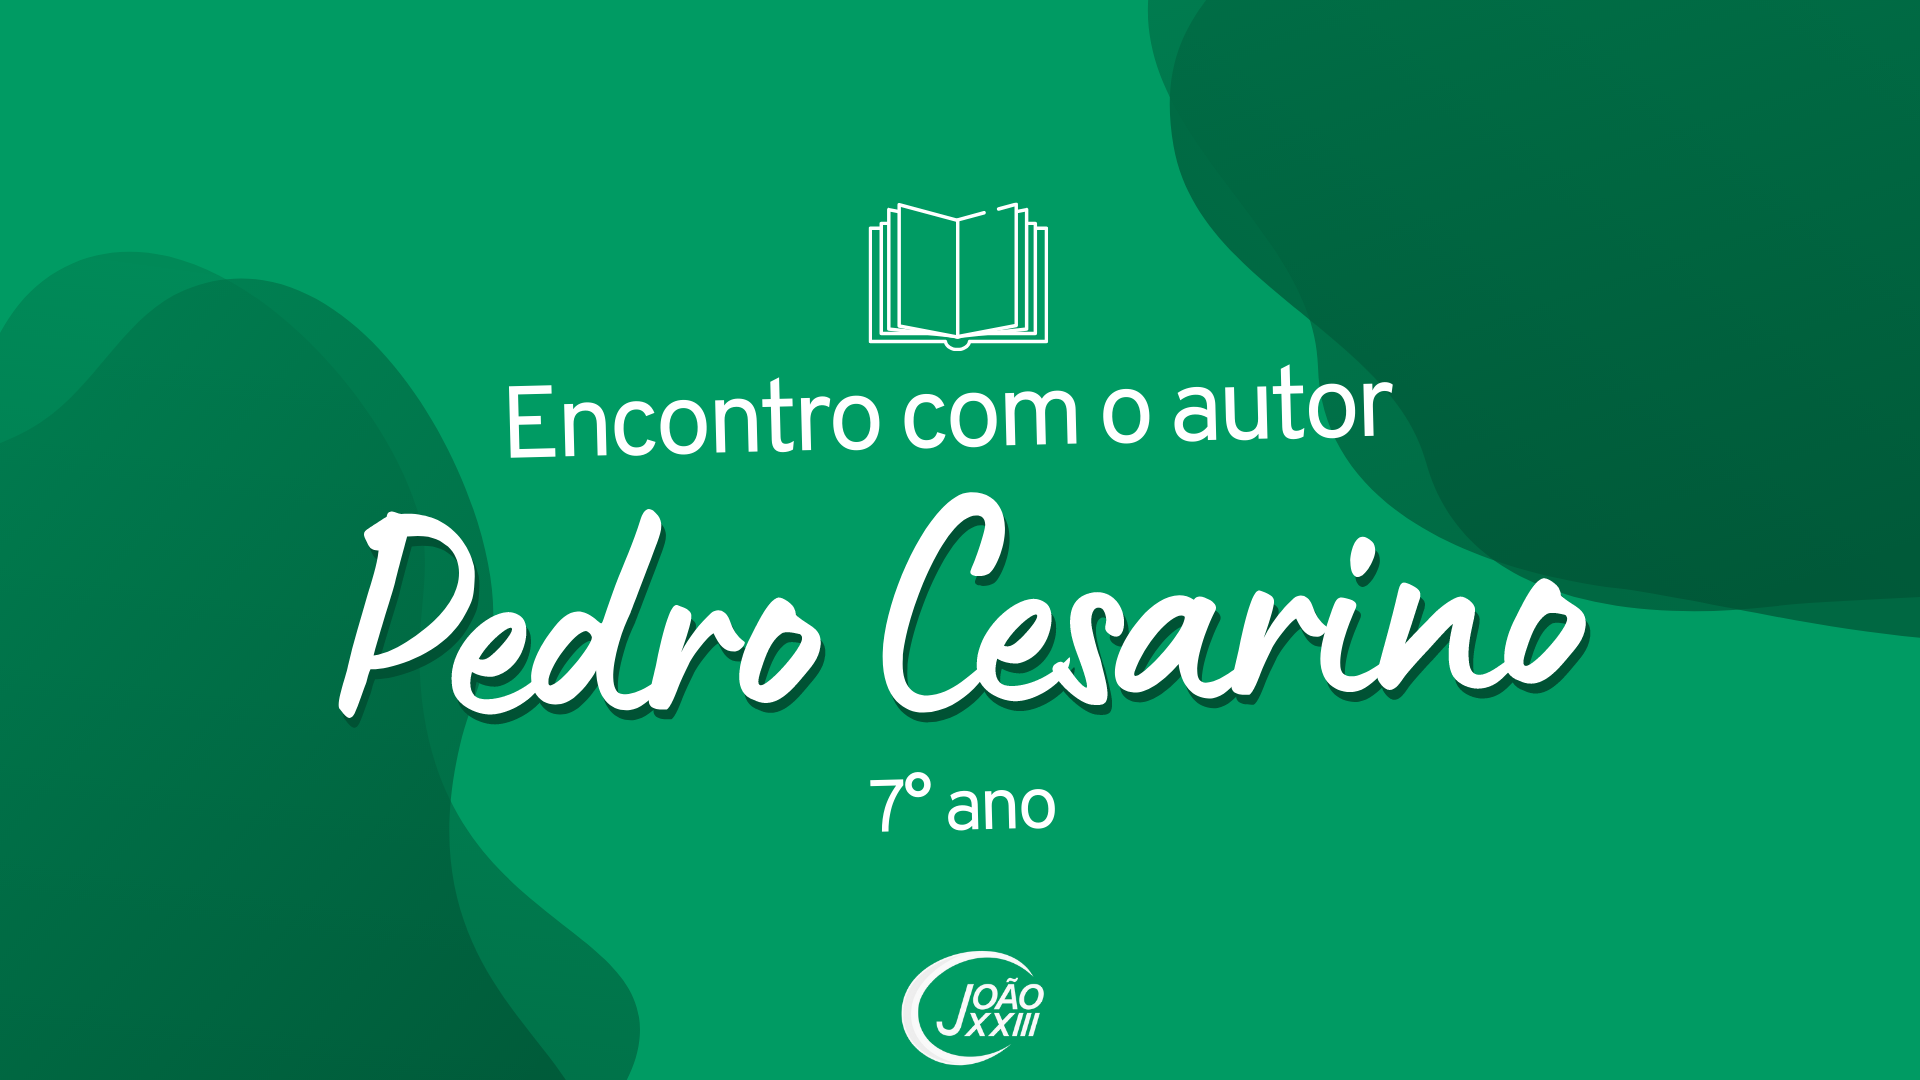 You are currently viewing Encontro com o autor Pedro Cesarino